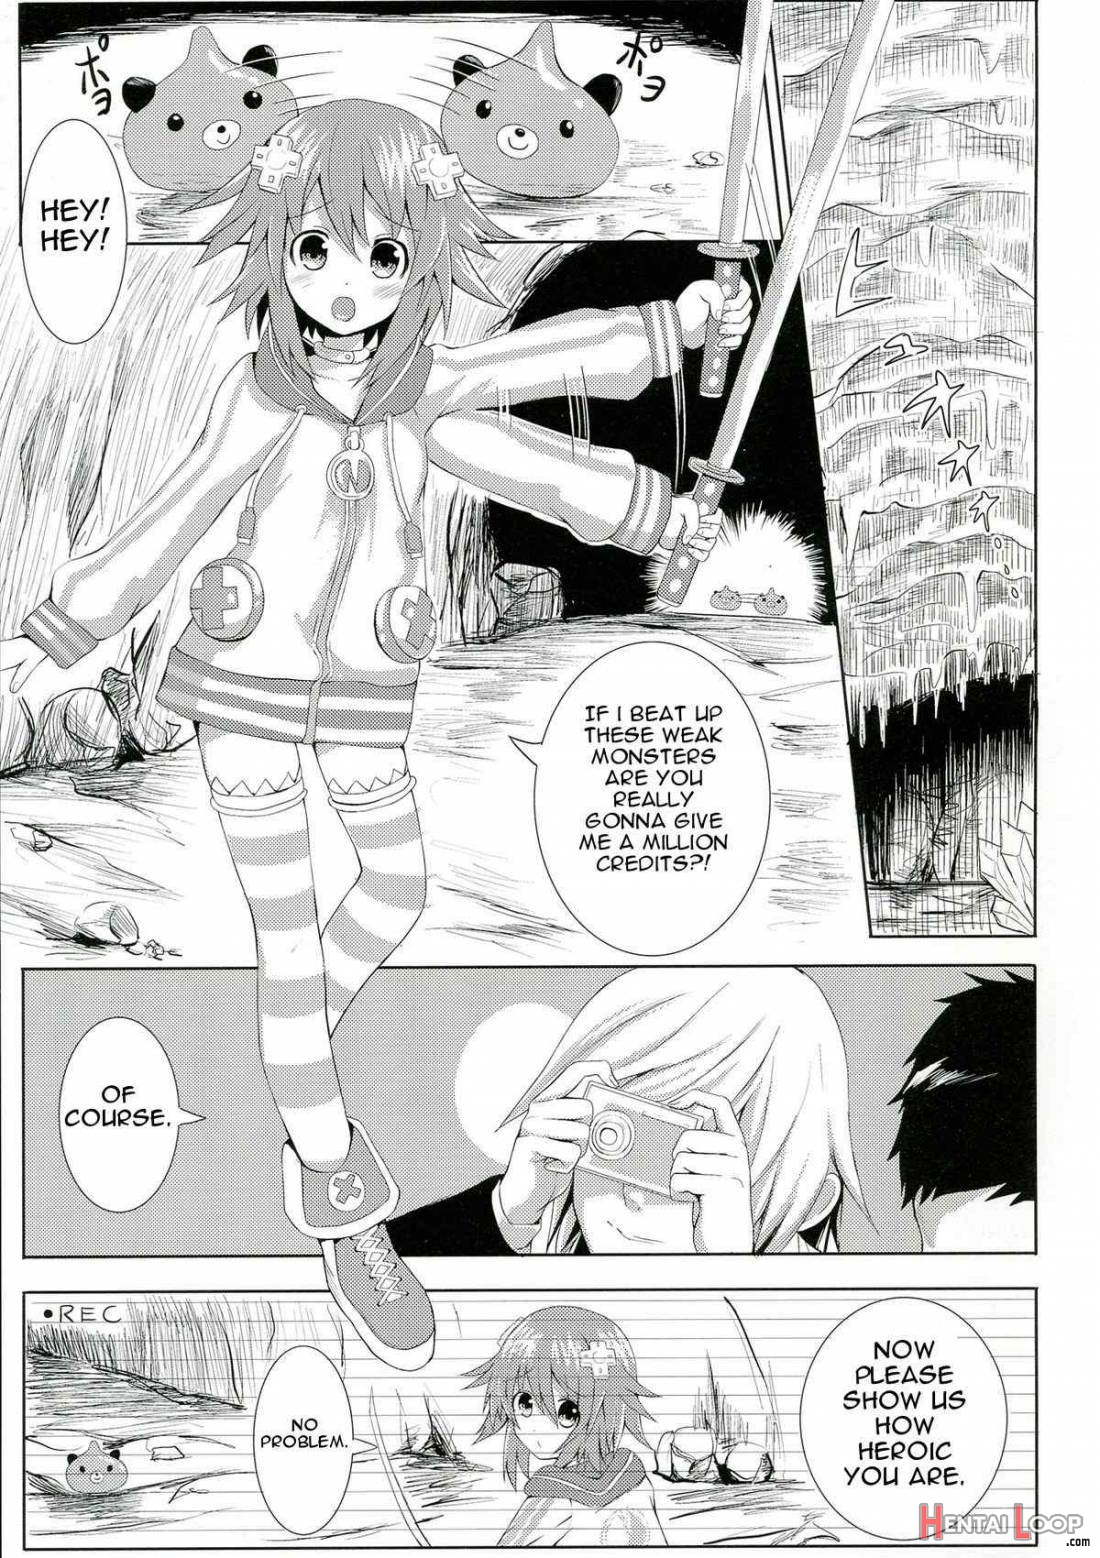 Choujigen Rape Neptune page 2